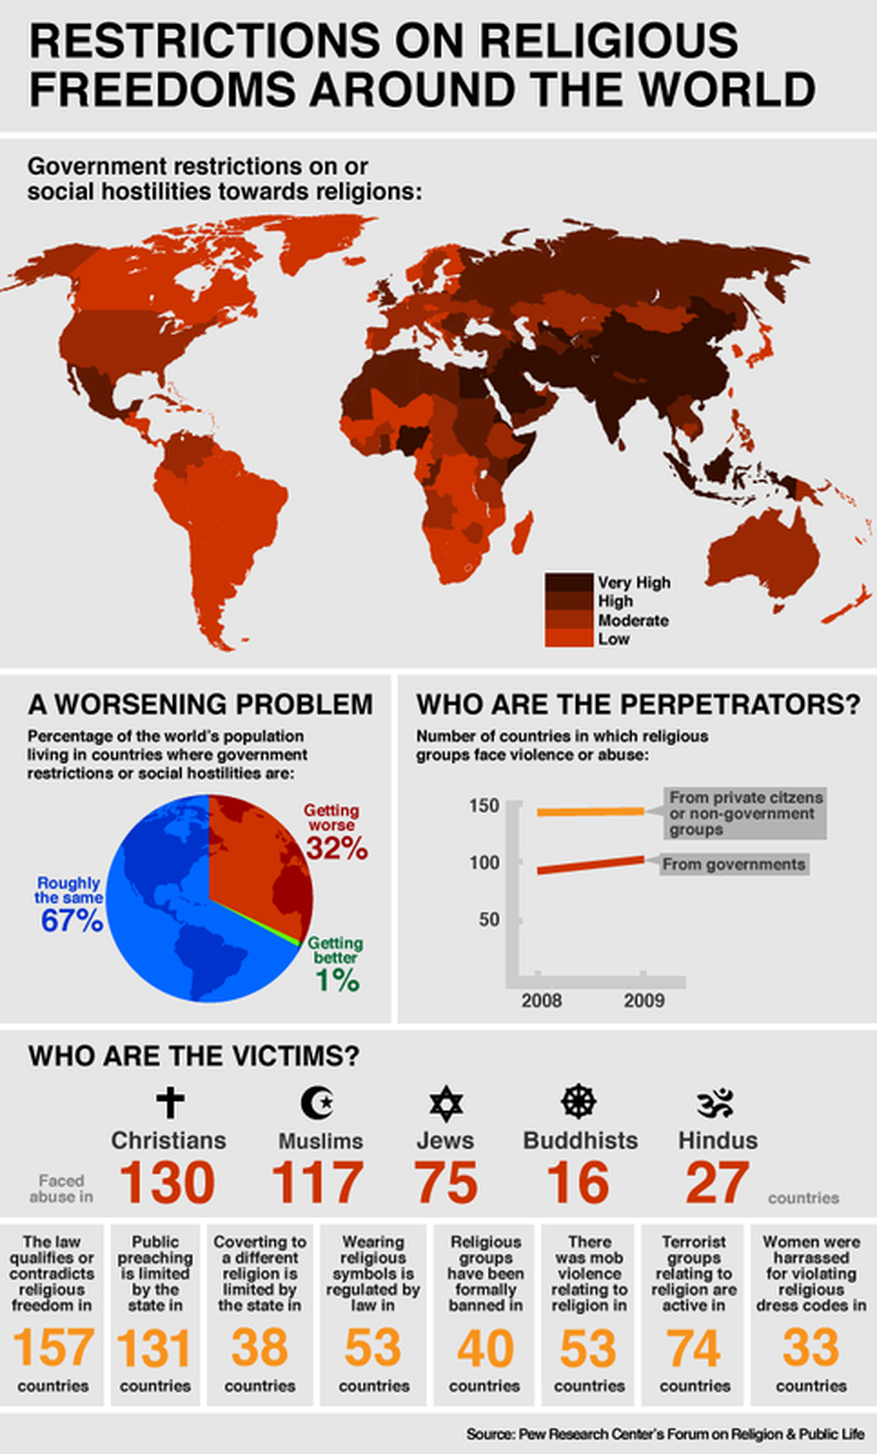 Restricciones a las libetades religiosas alrededor del mundo